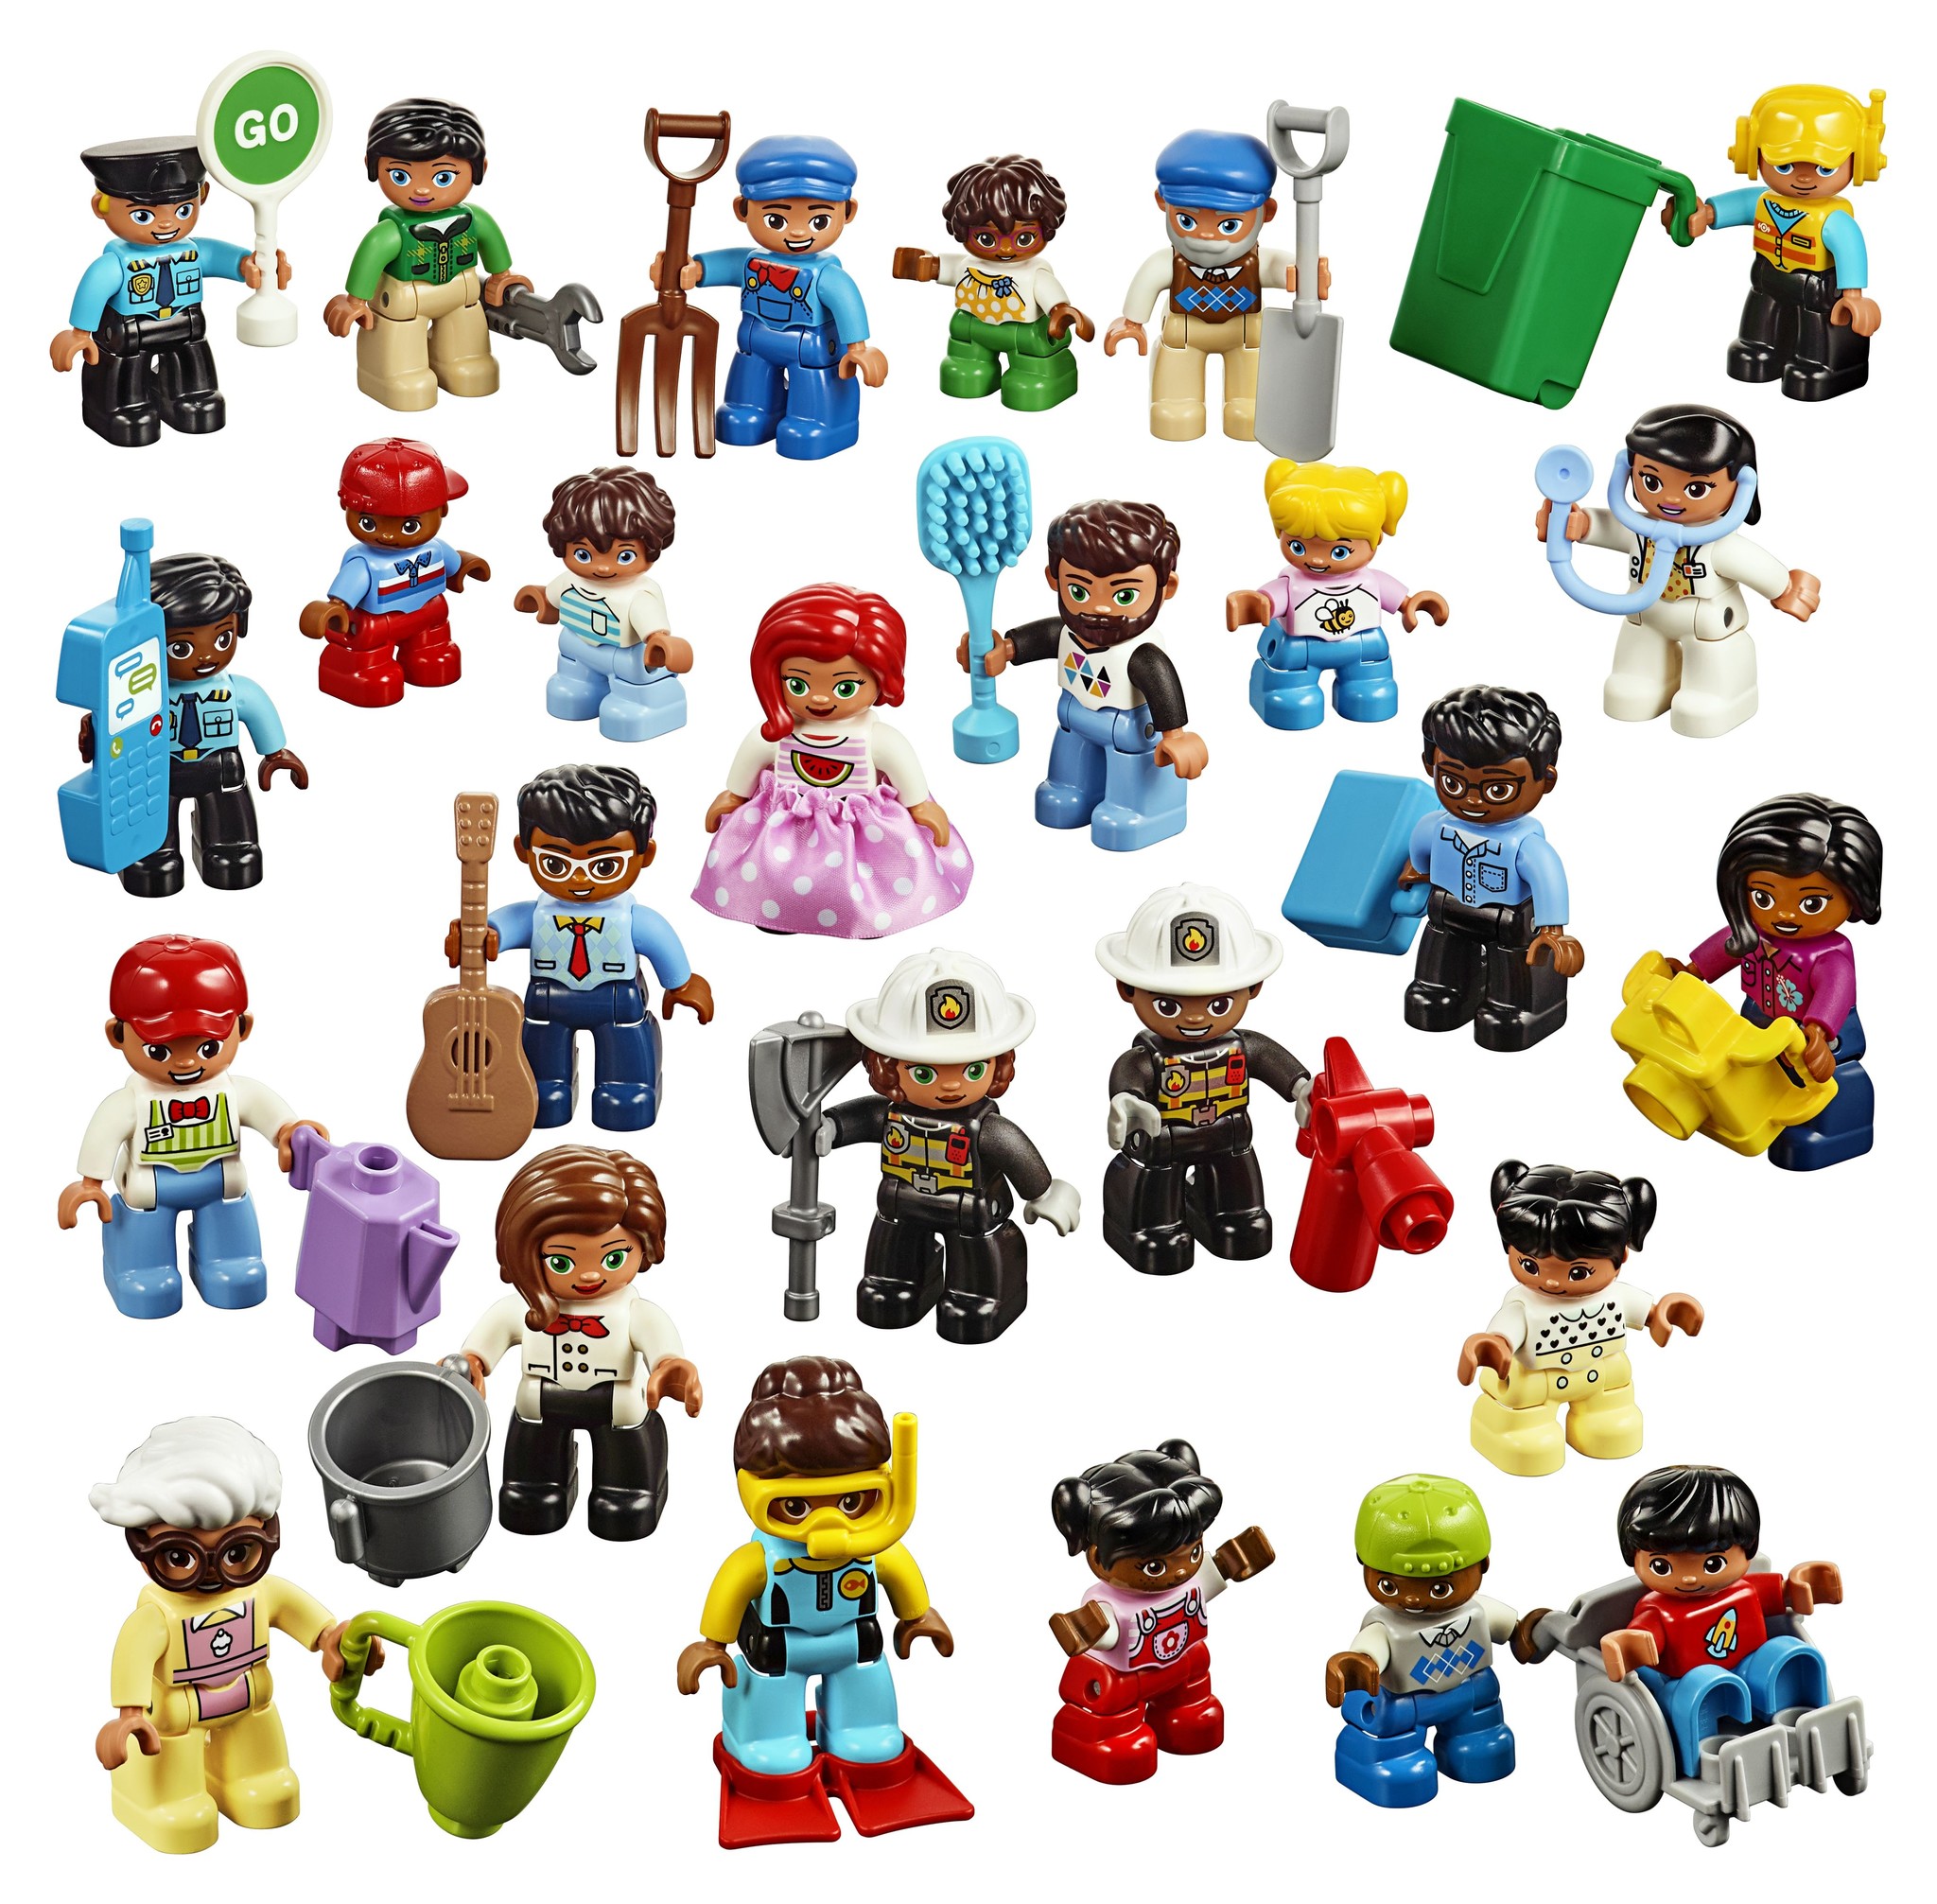 Mam Patriottisch Wees tevreden LEGO DUPLO Minifiguren set 45030 - voordelig kopen bij Kinderspel® -  Kinderspel ®